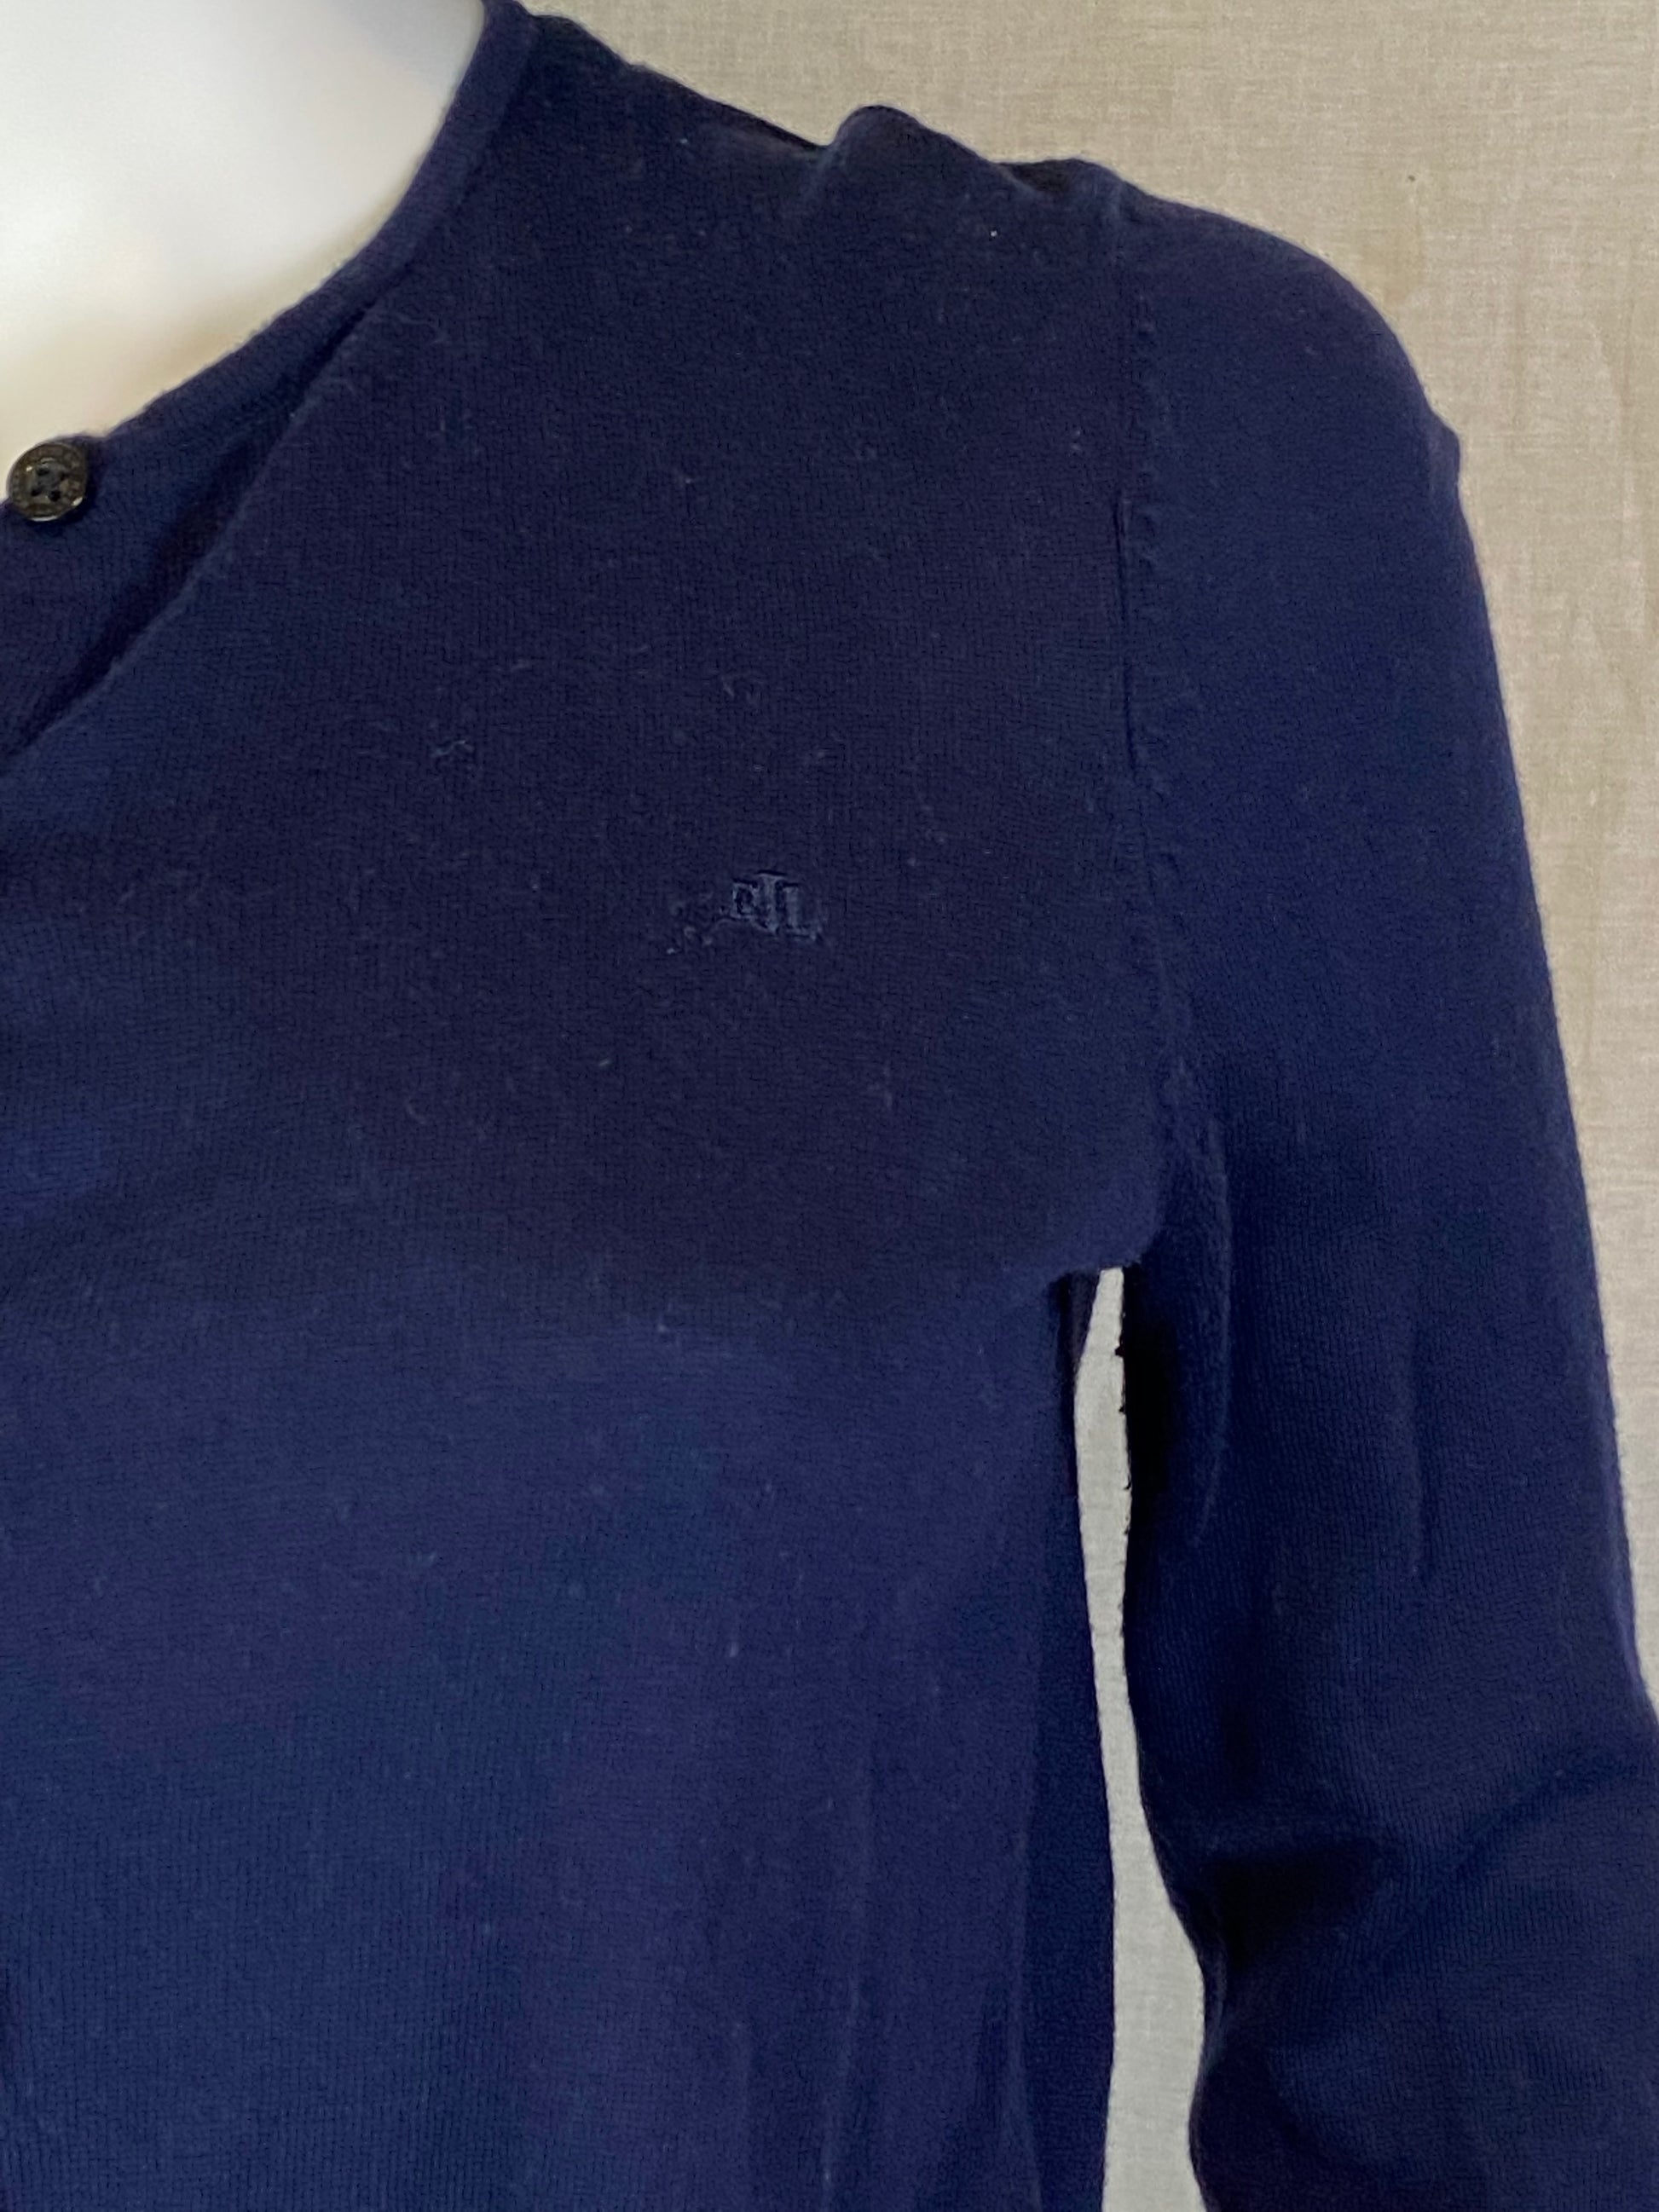 LAUREN Ralph Lauren Navy Blue Sweater Cardigan M ABBY ESSIE STUDIOS